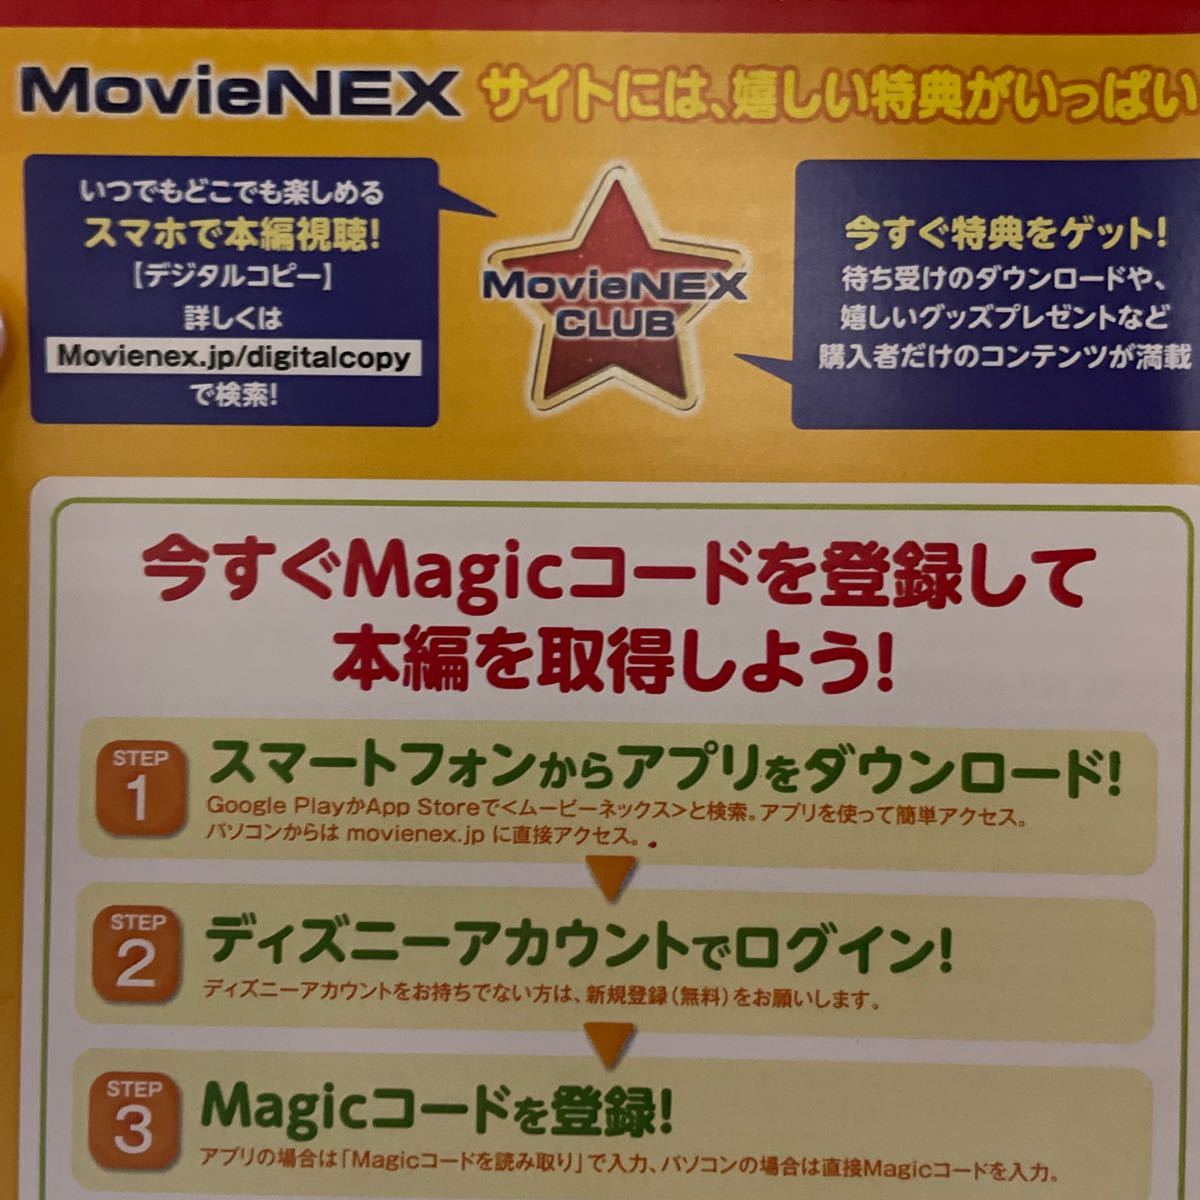  Lion King anime Magic code magic code Magic code [ code sending ] MovieNEX Disney movie prompt decision 